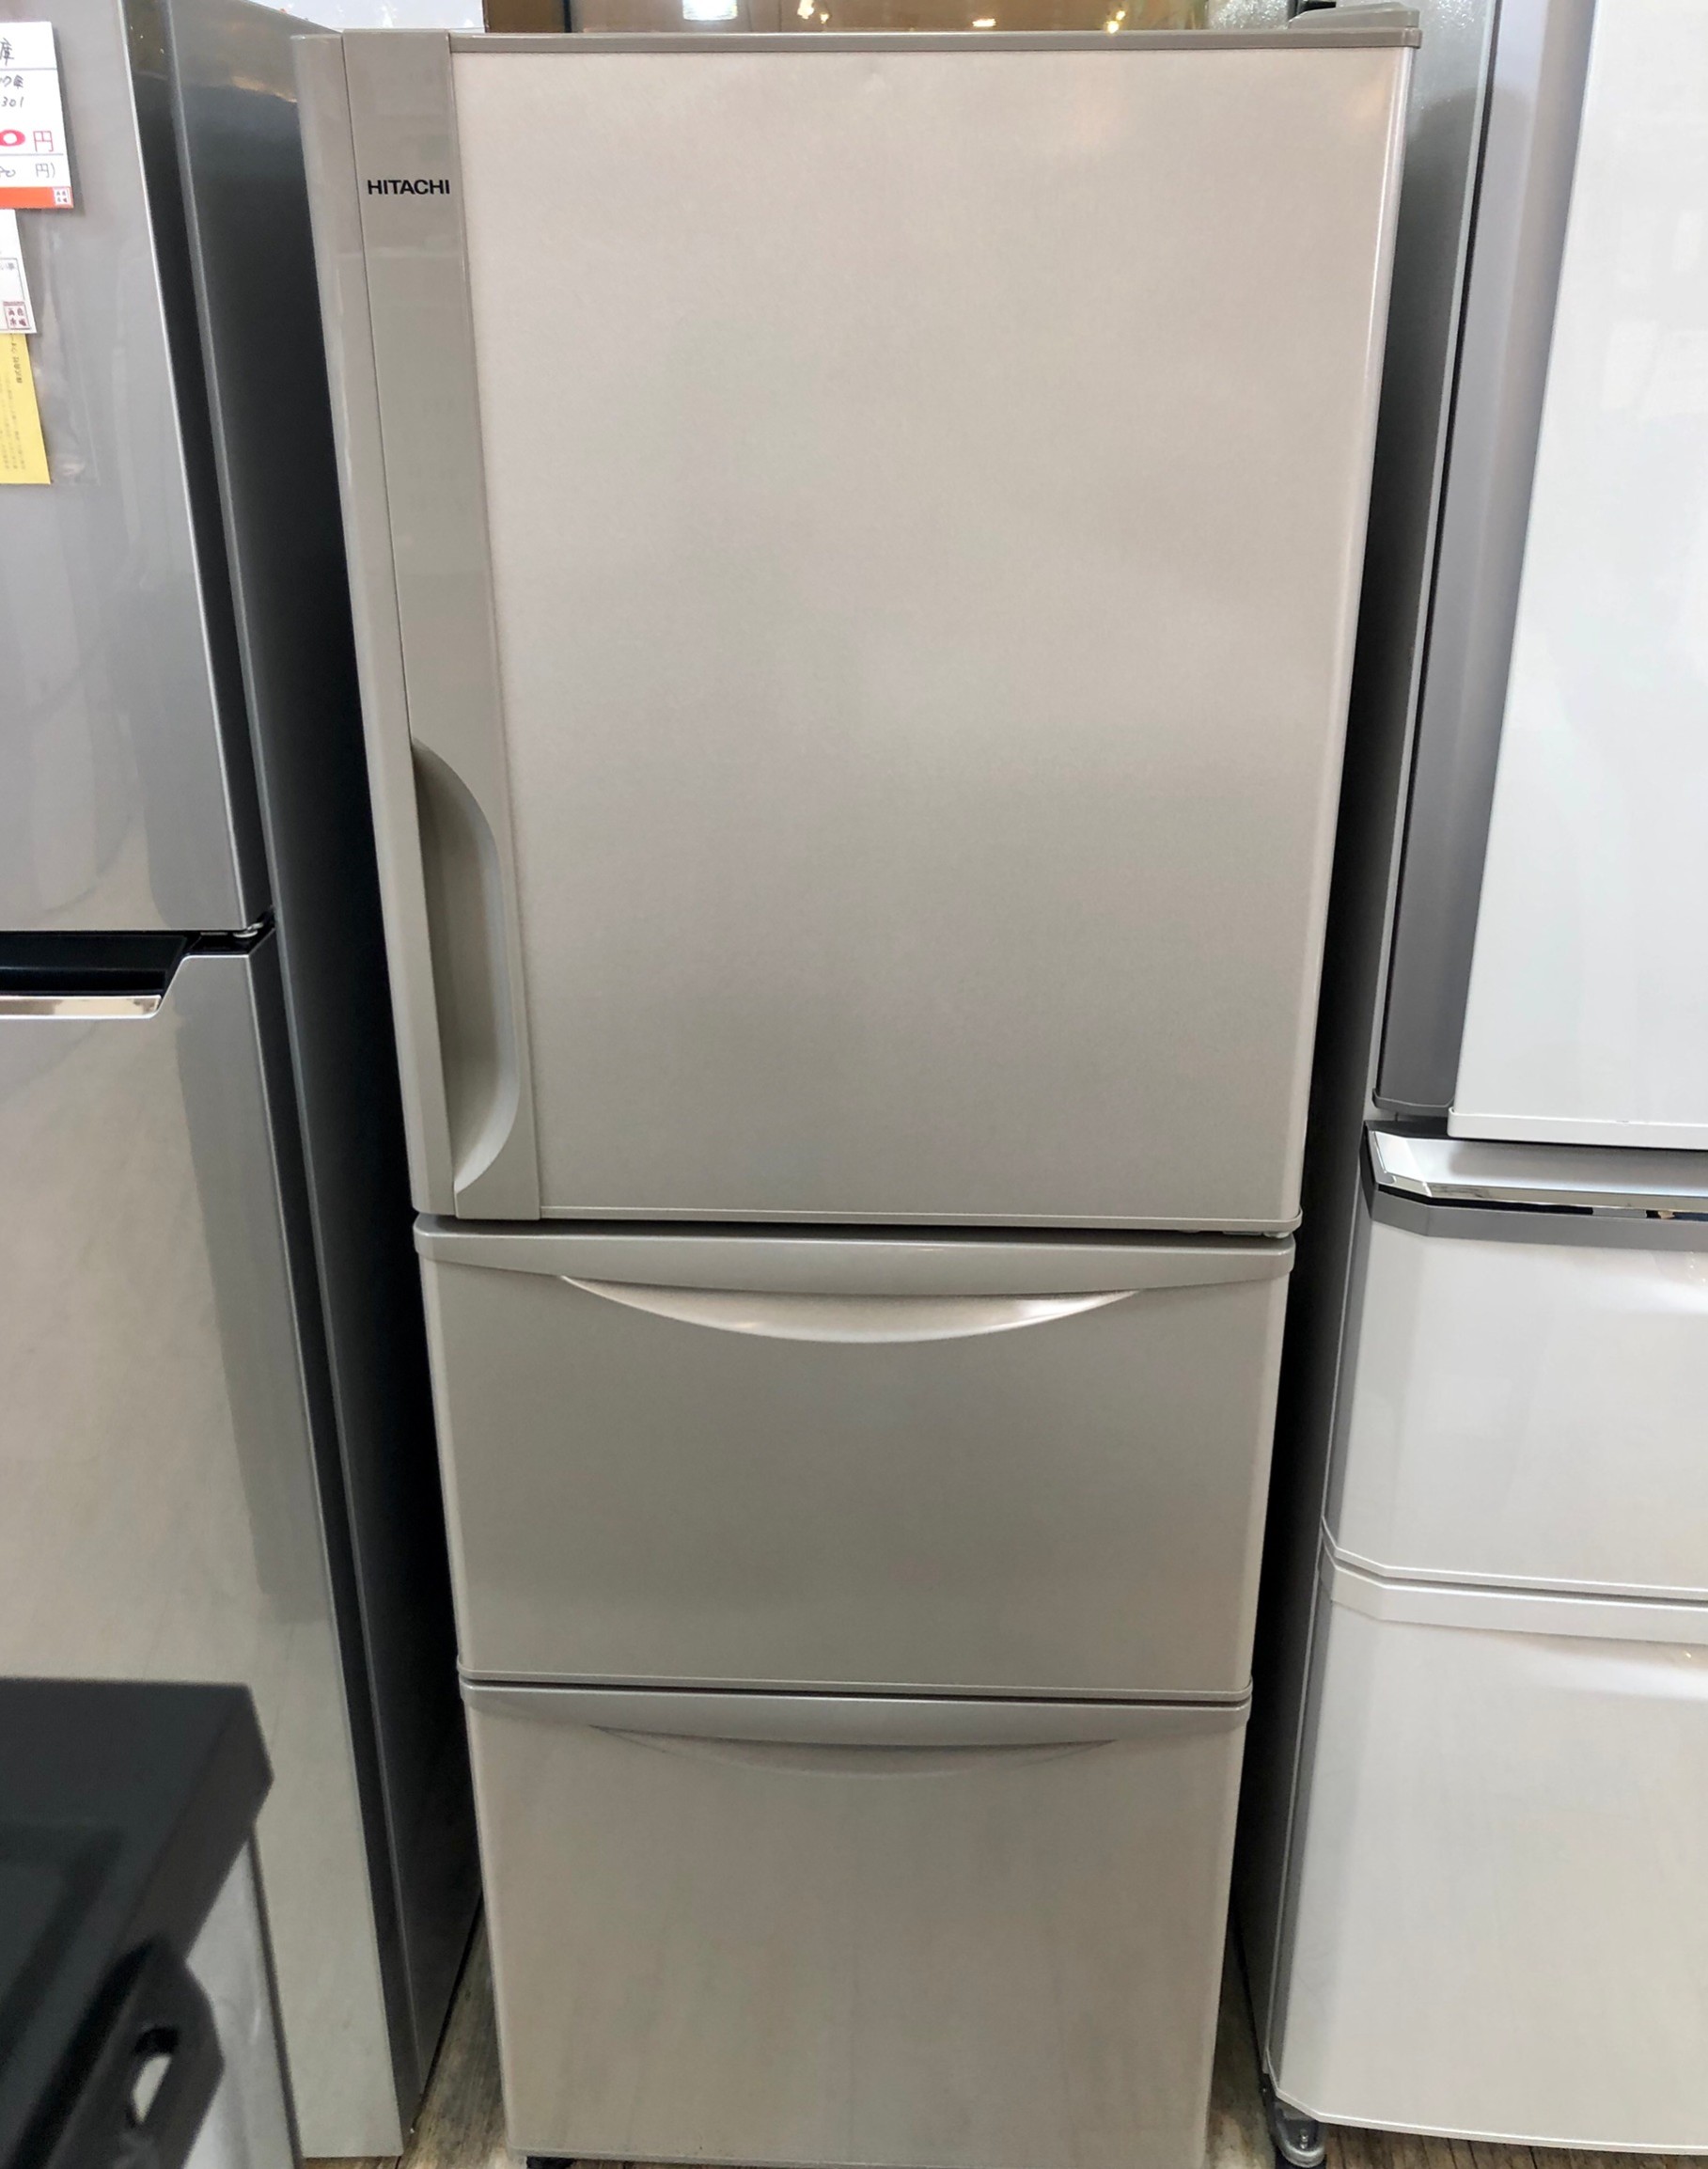 HITACHIの3ドア冷蔵庫『R-27JV 2019年製』が入荷しました - キッチン家電